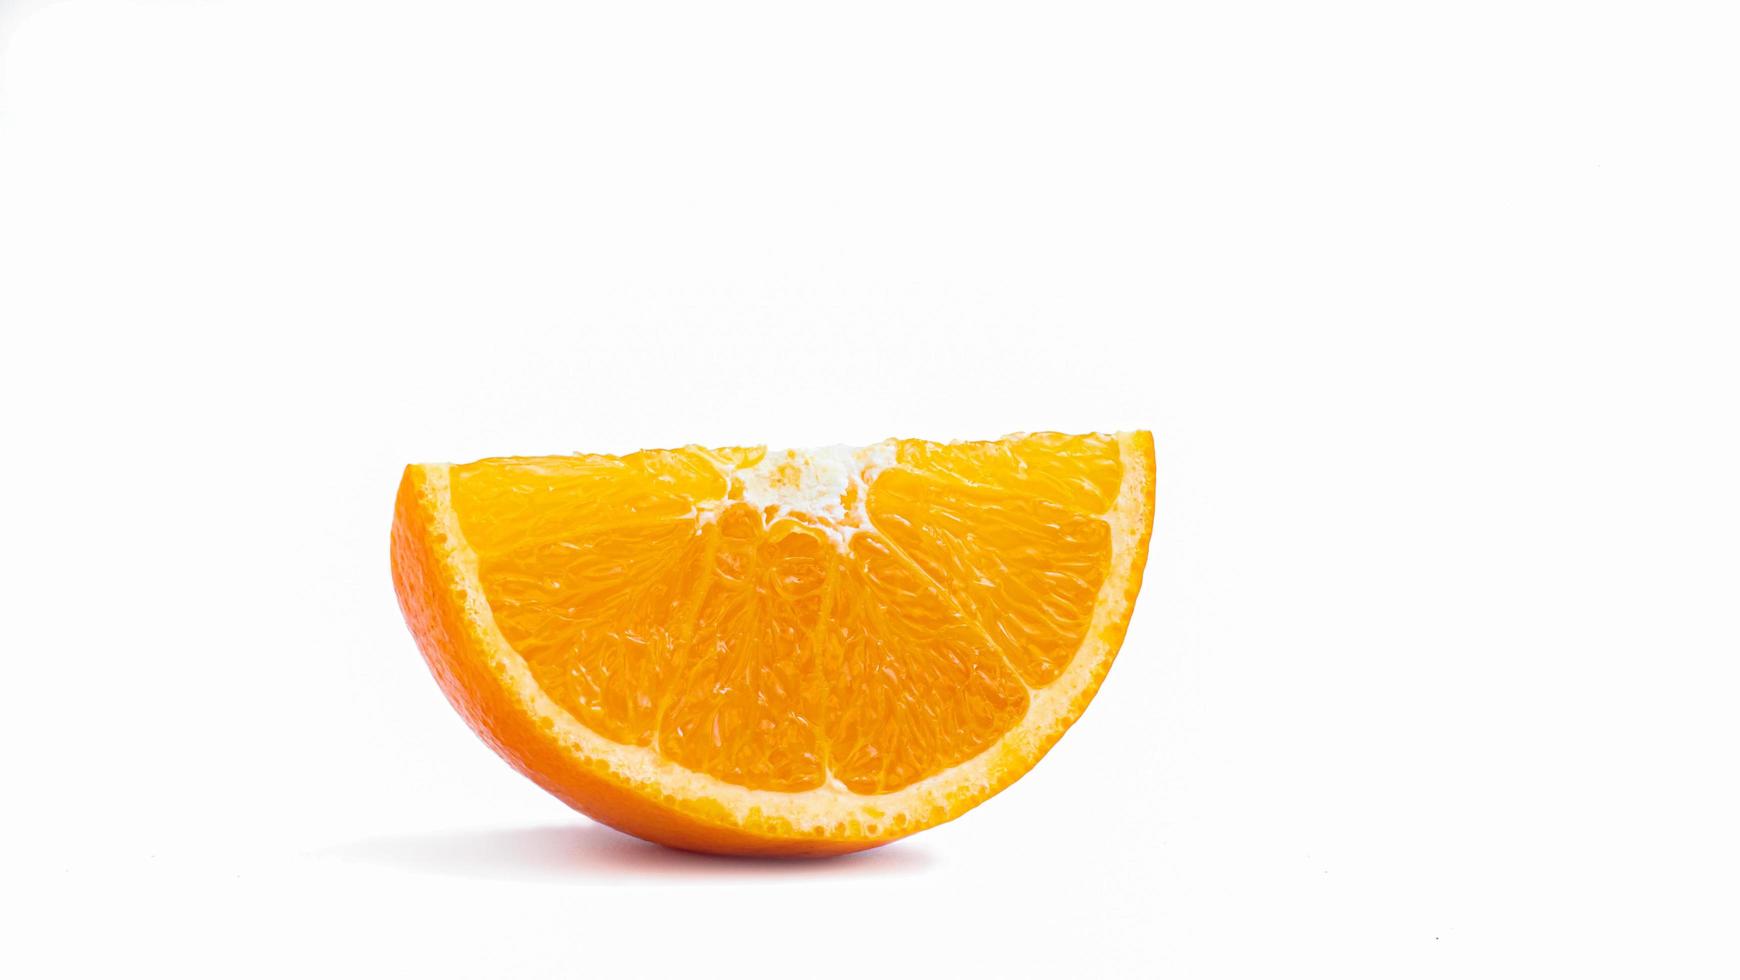 halvera och skiva en mogen apelsinfrukt med gyllengult skal. isolerad på vit bakgrund med skugga. foto